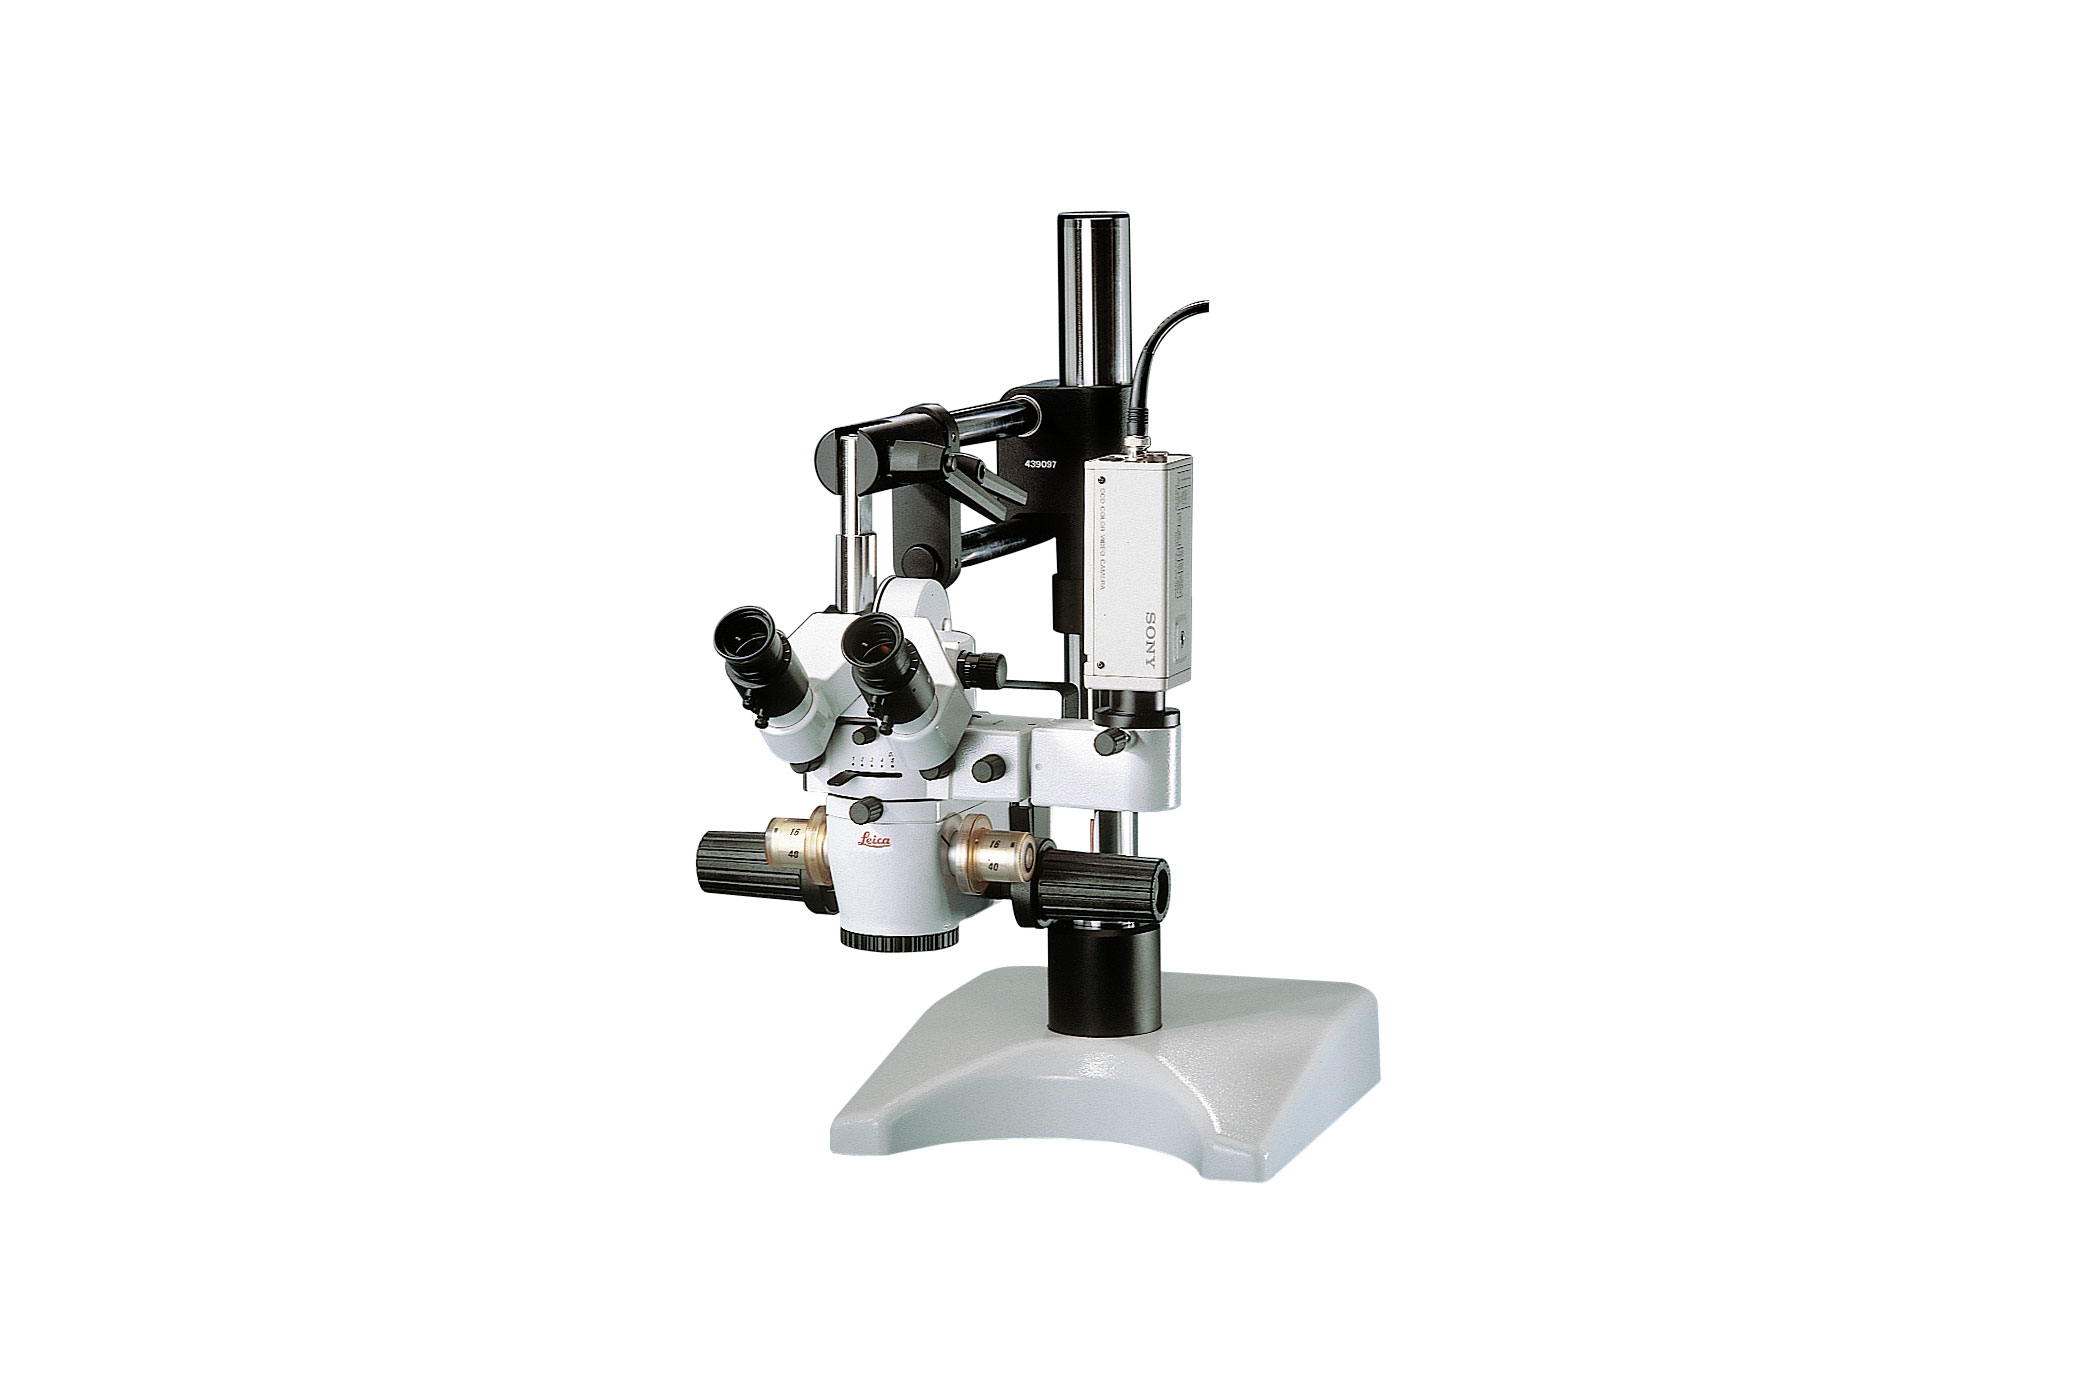 Das Operationsmikroskop Leica M651 MSD mit Tischstativ zum Üben mikrochirurgischer Techniken.